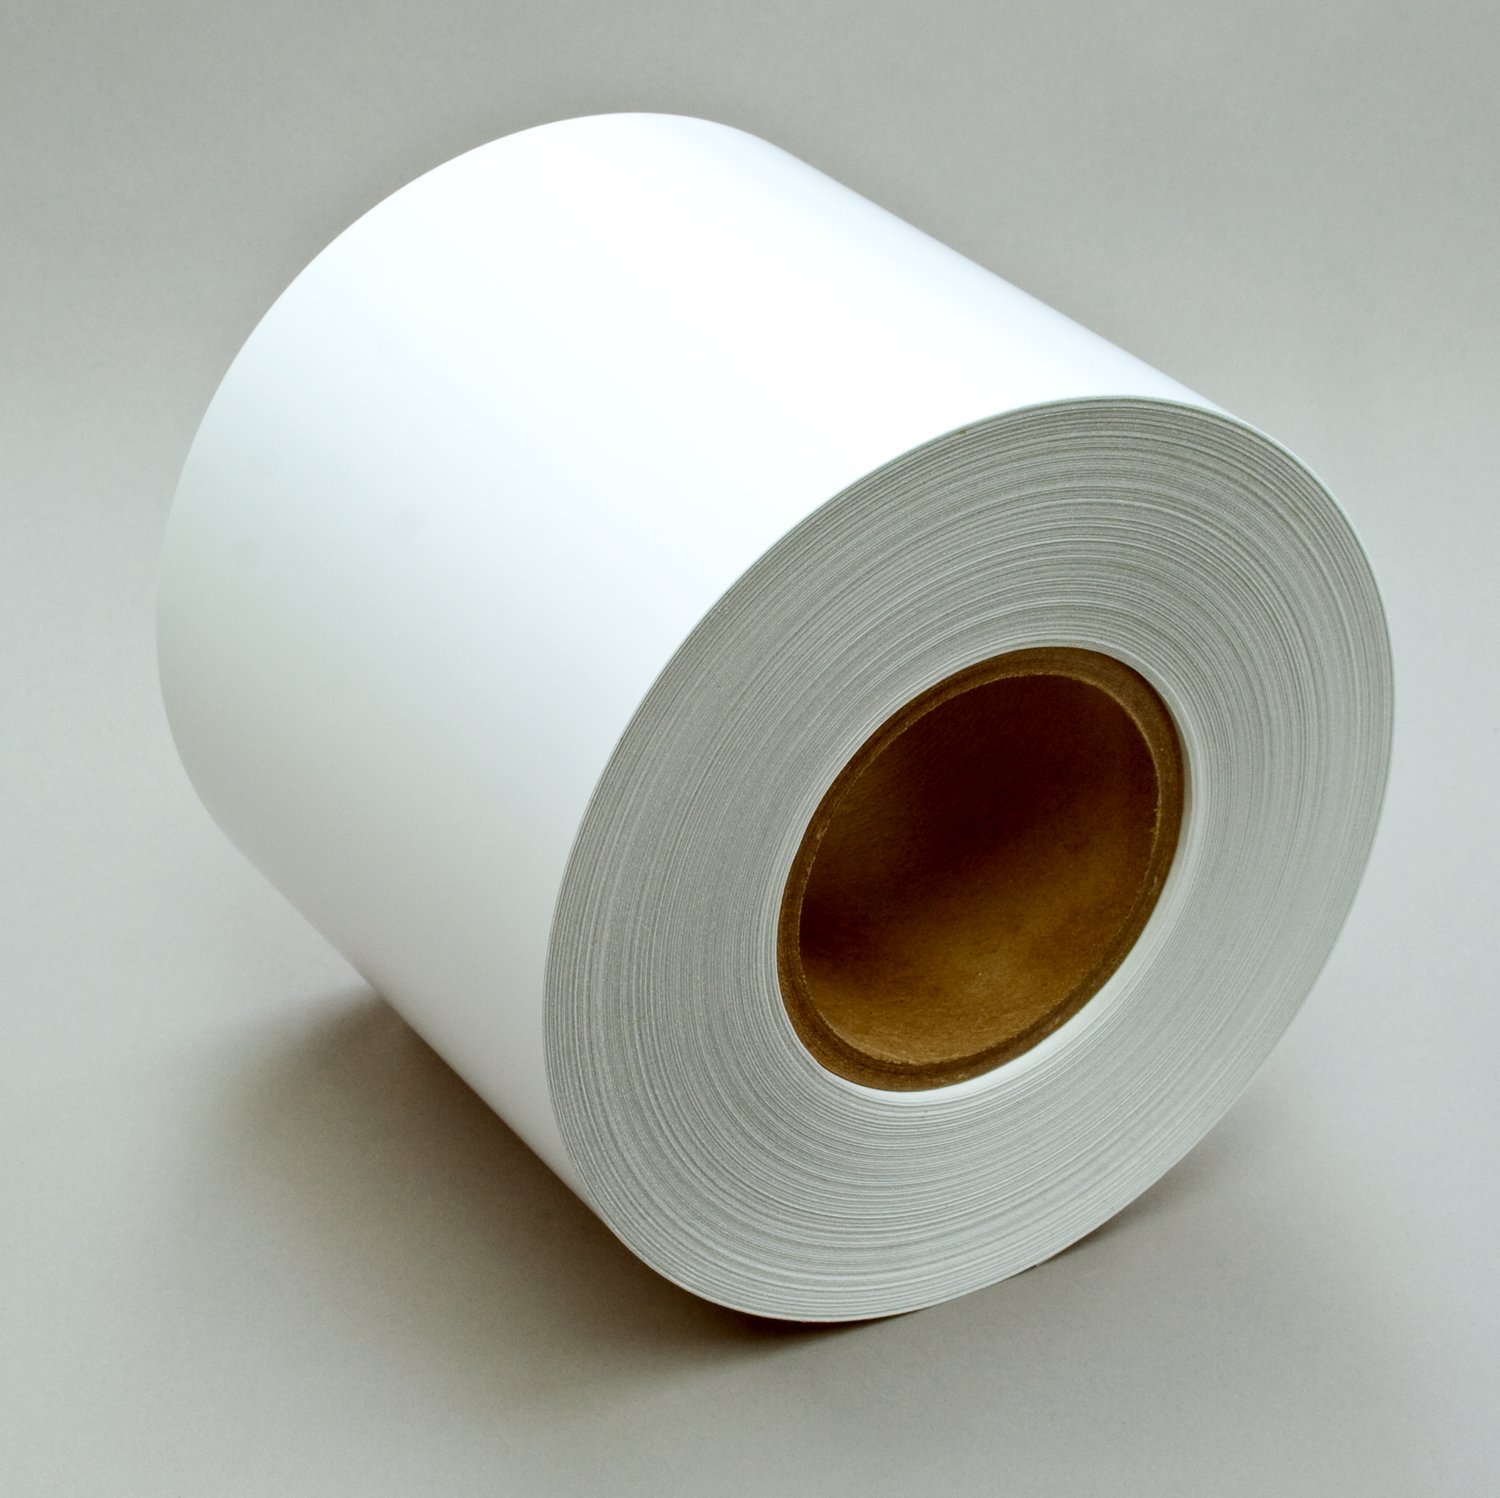 Poly Coated Kraft Paper Sheets - 18 X 24 - 50 lb. - 830 Per Case